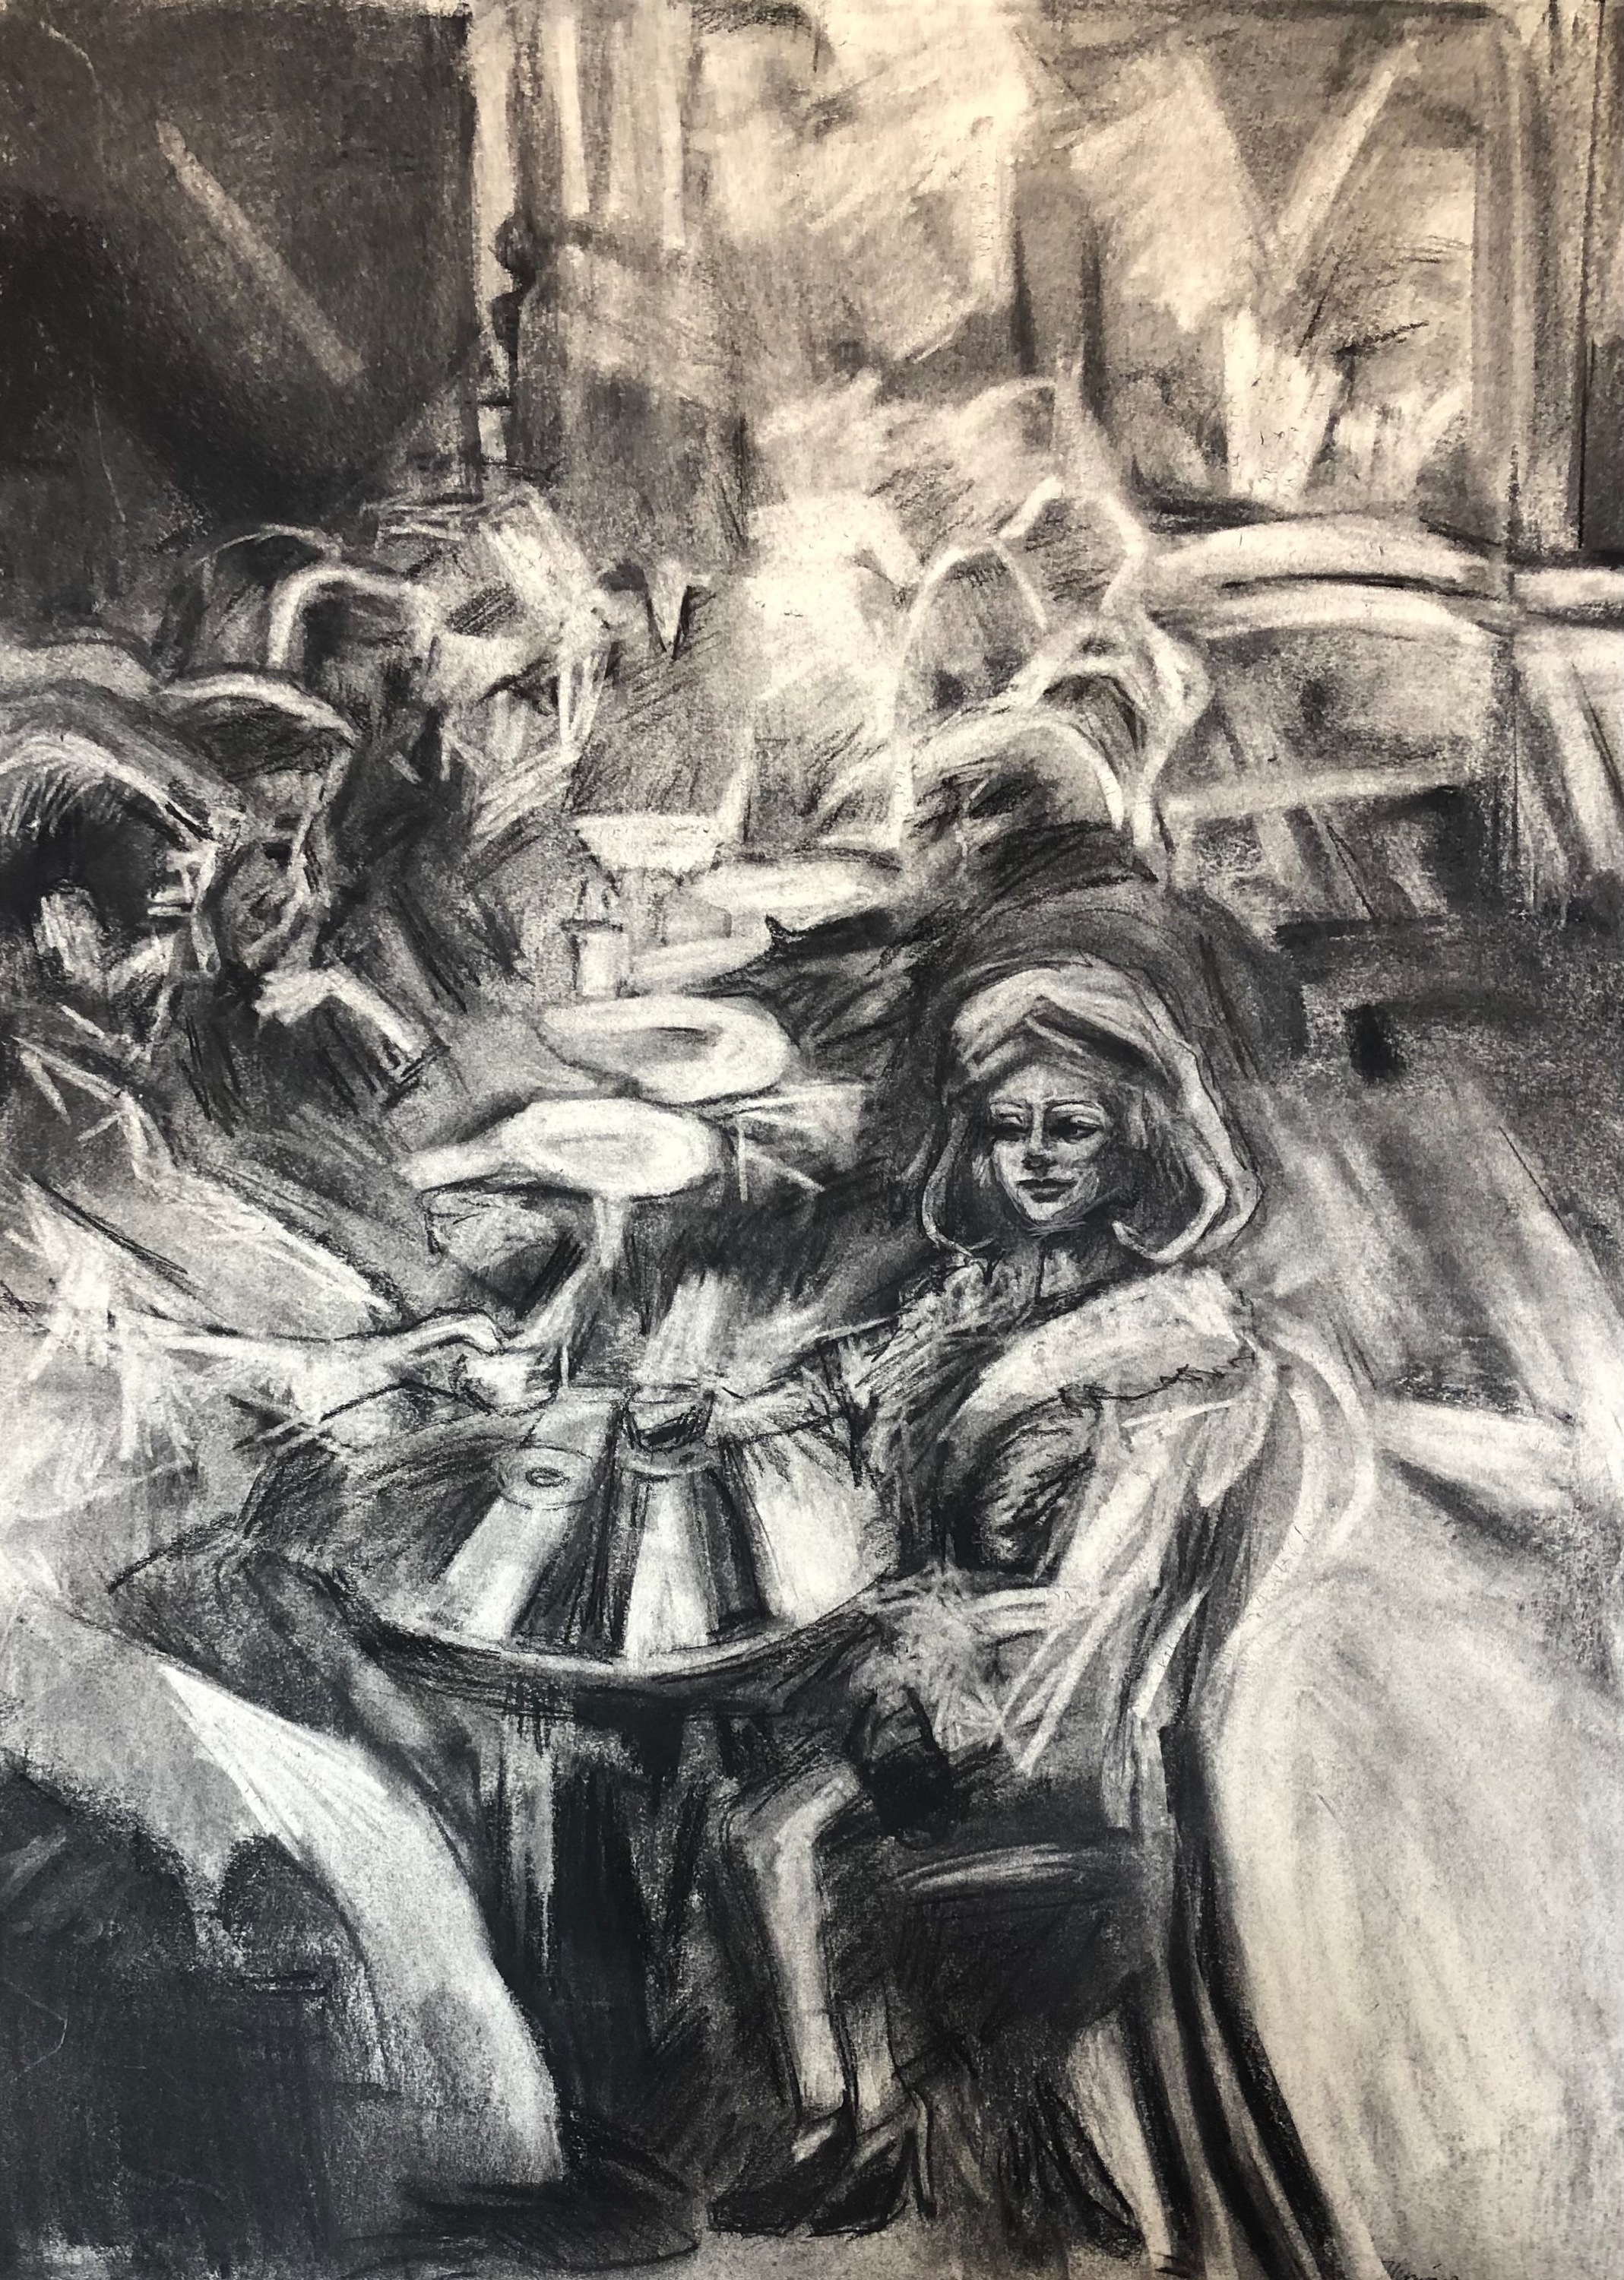 Paris cafe 2 charcoal on paper 24x18 tepman